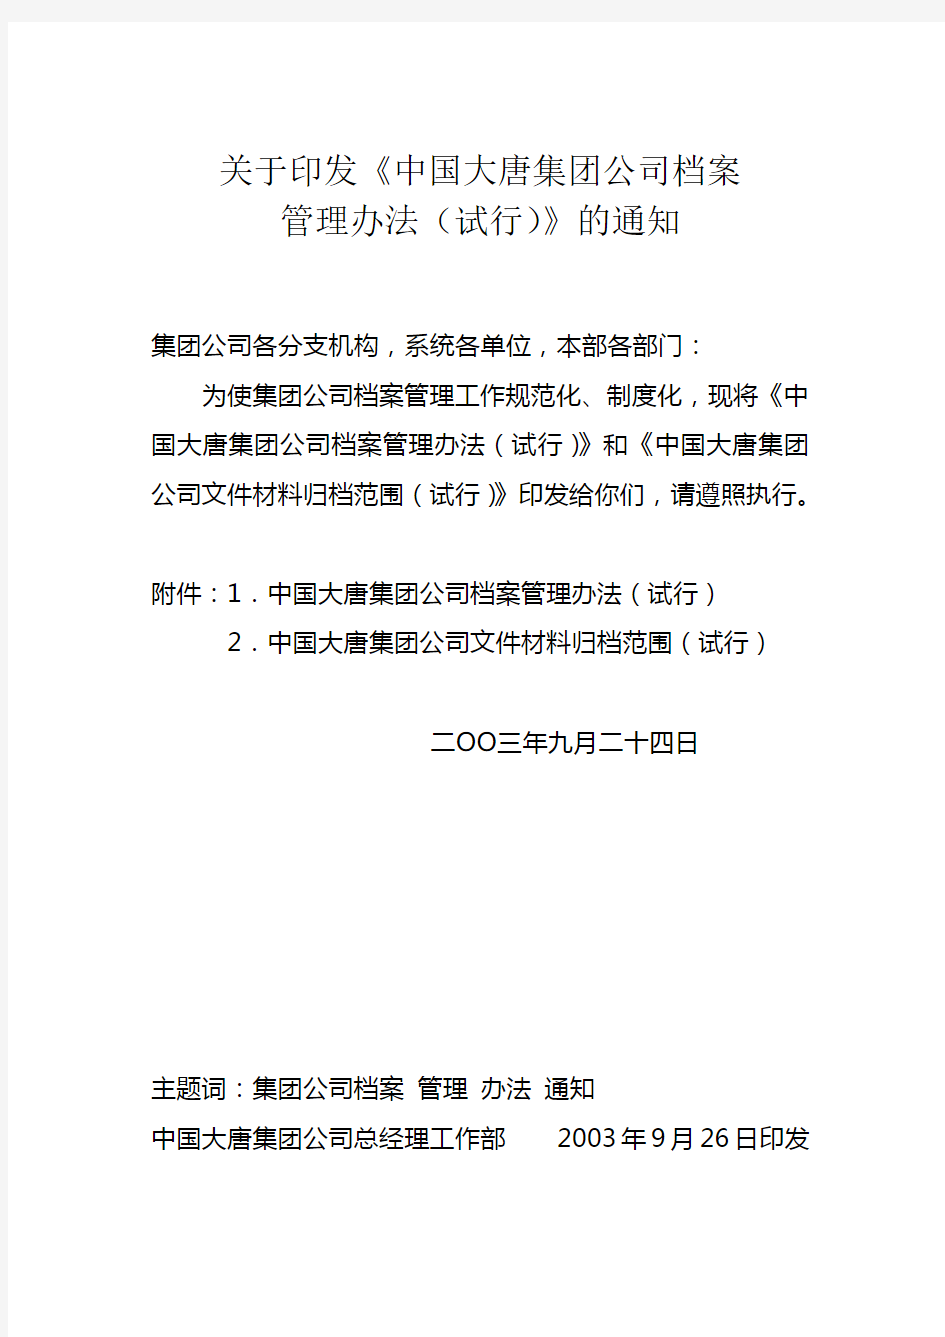 中国大唐集团公司档案管理办法(试行)